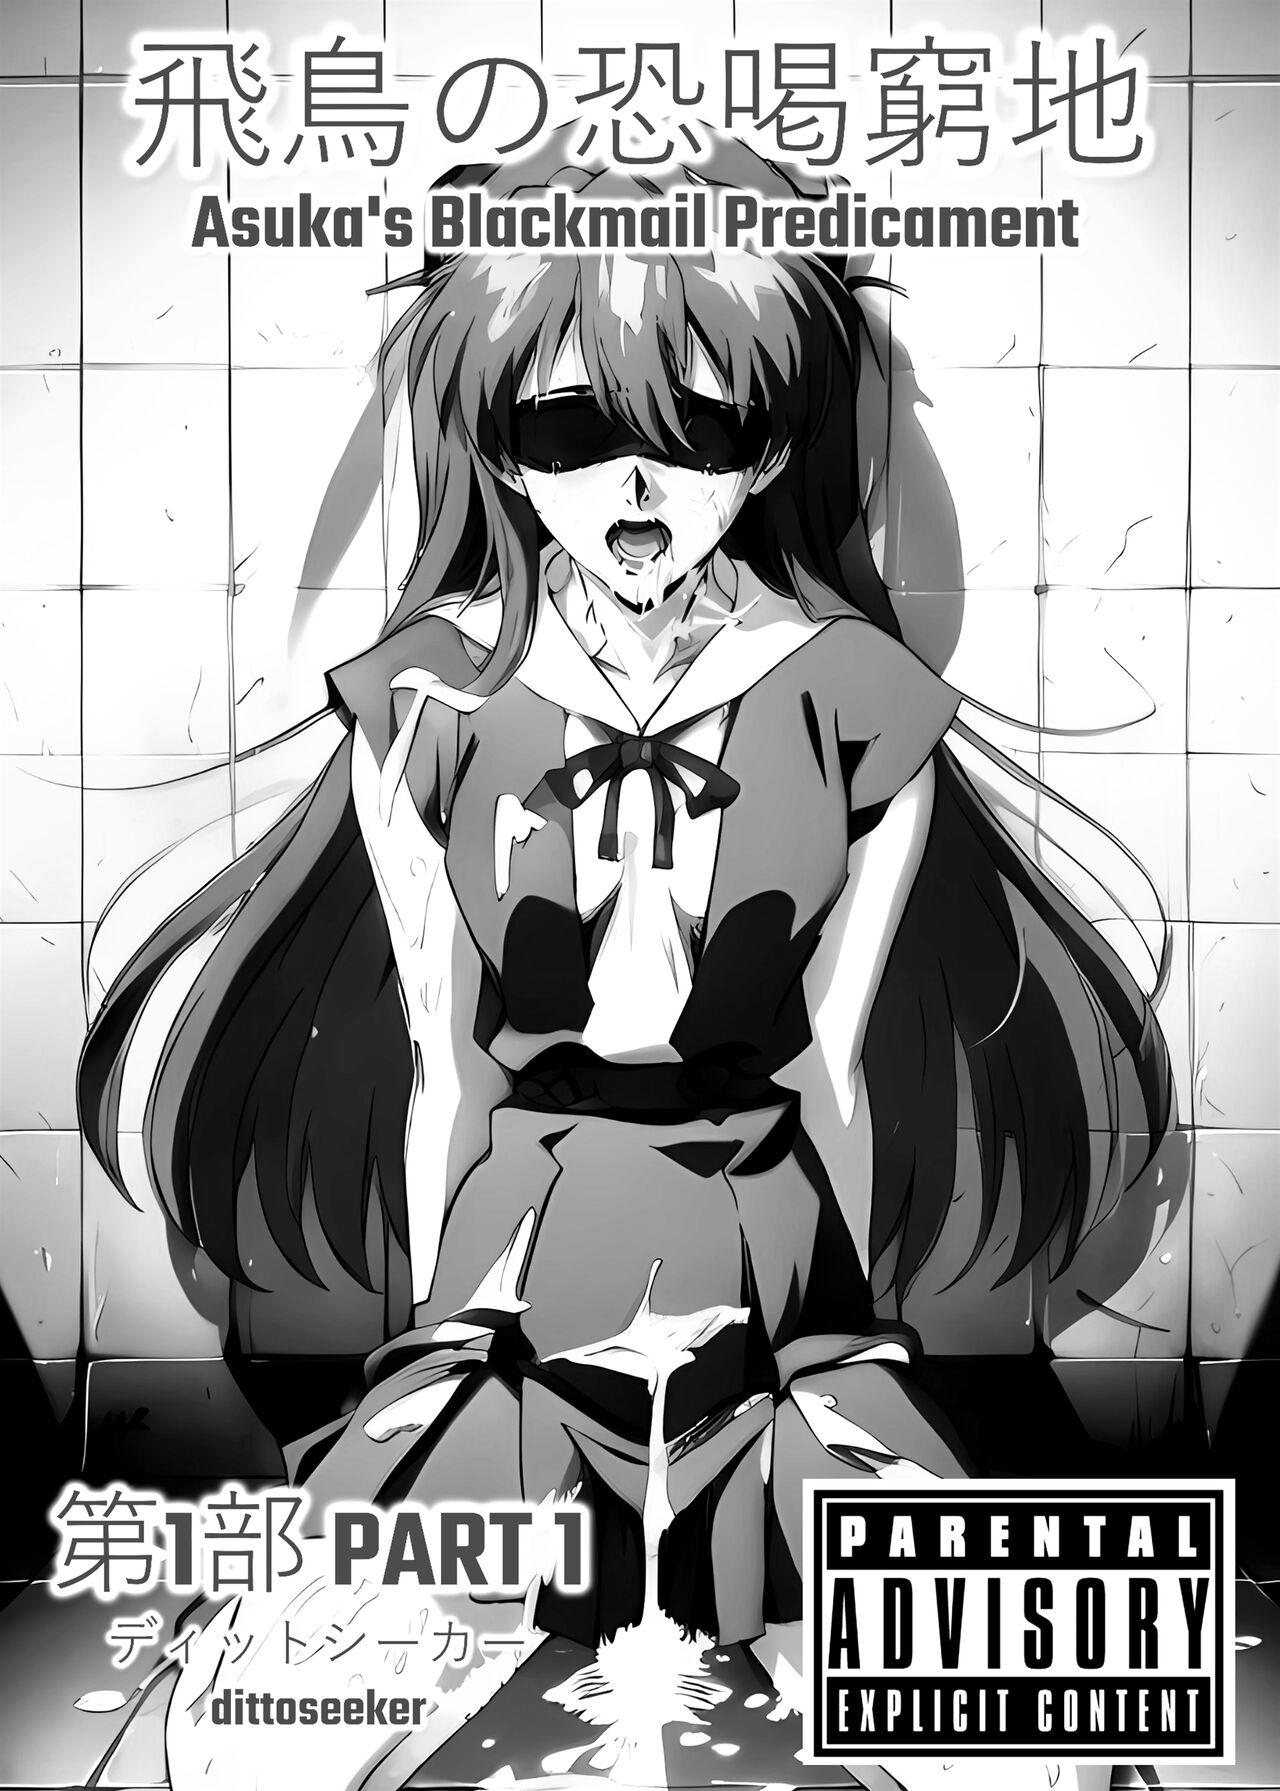 Cojiendo Asuka's Blackmail Predicament - Neon genesis evangelion Hot - Picture 2